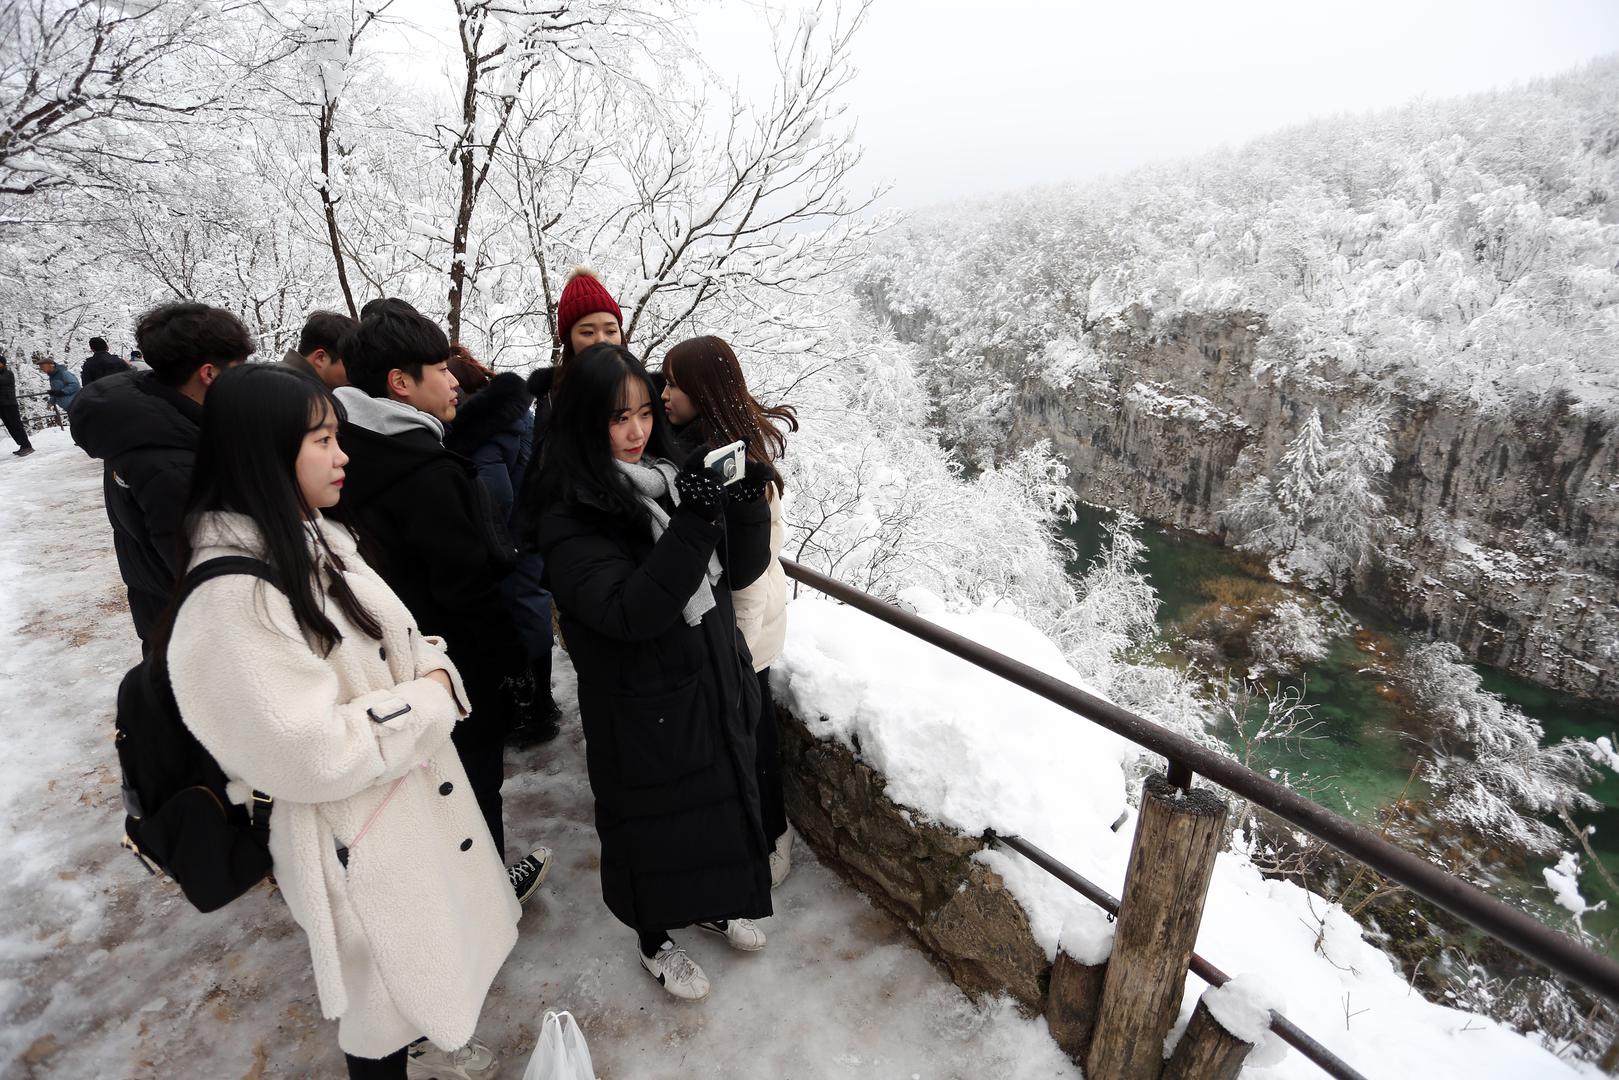 Preko 20 centimetara snježnog prekrivača i temperatura ispod nule nisu omeli brojne turiste u razgledavanju nacionalnog parka.